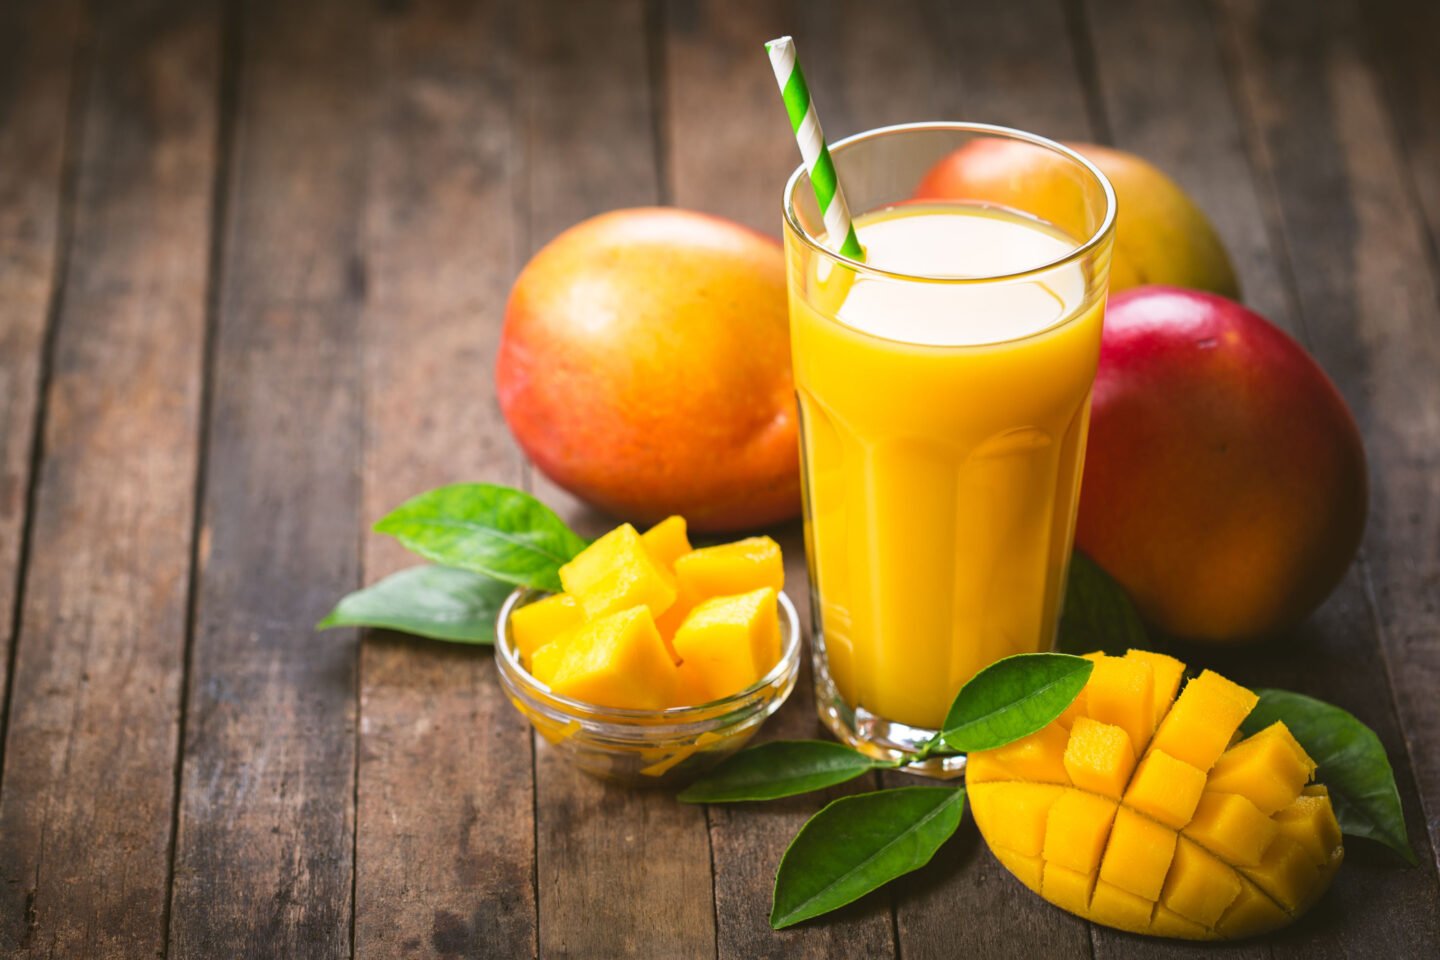 fresh mango juice with fruits